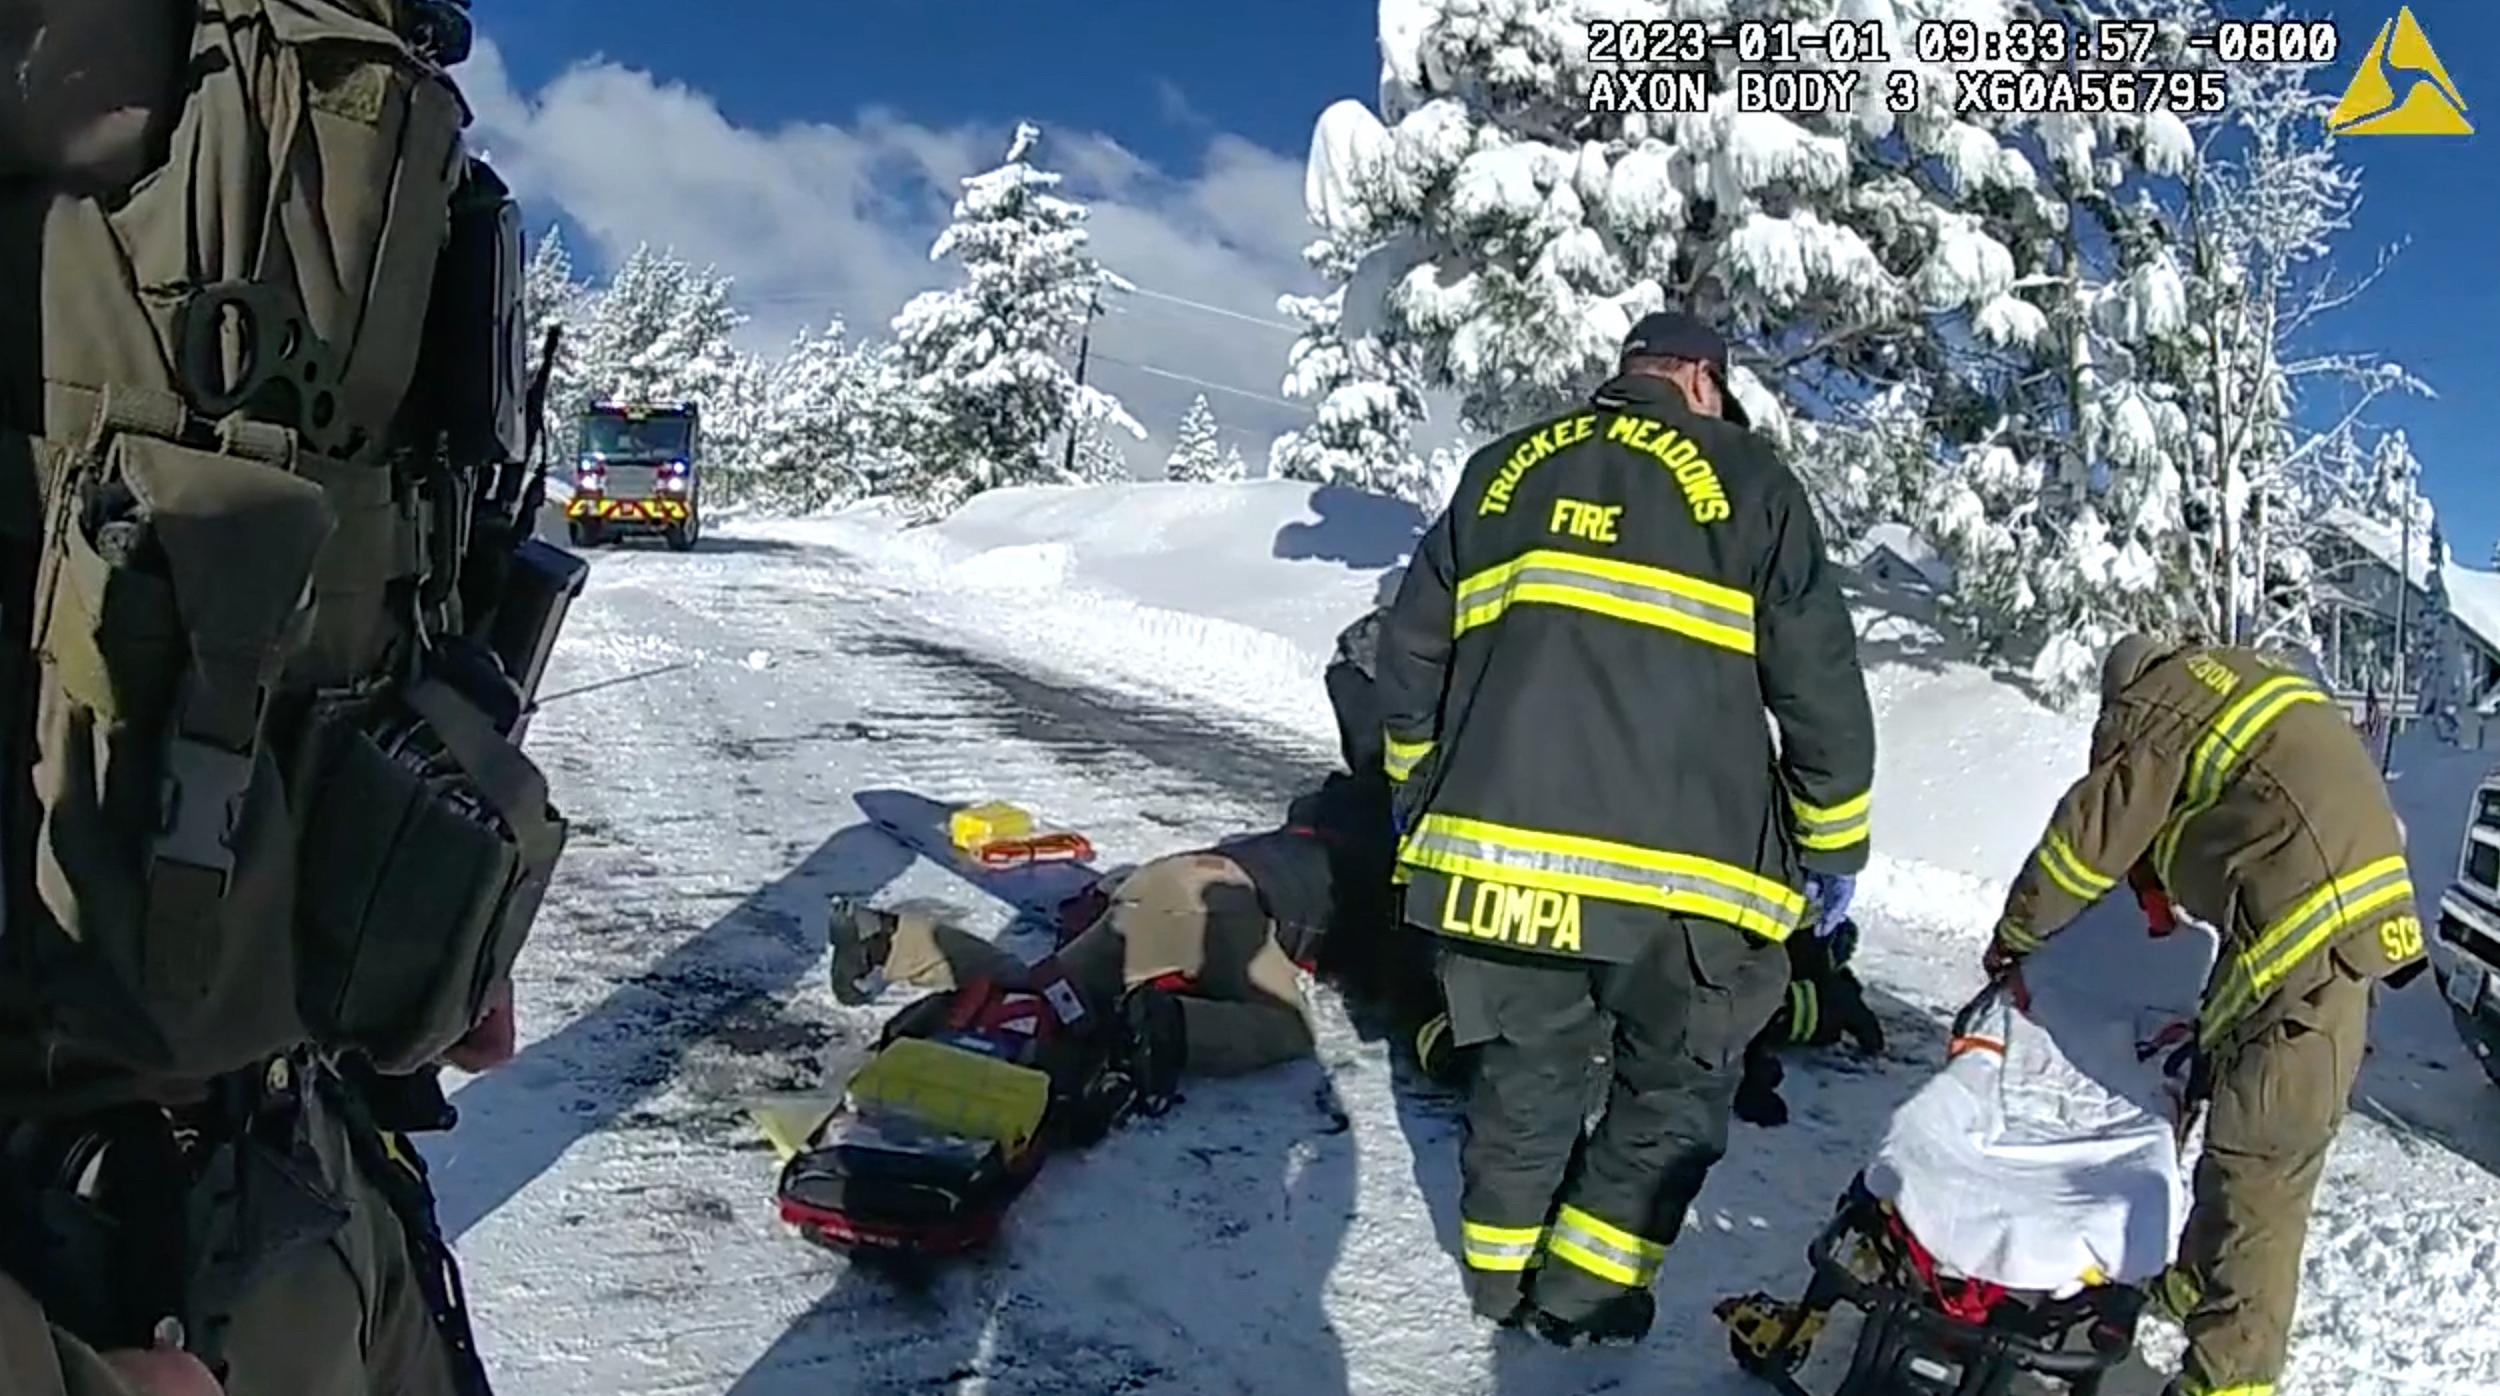 Imagens da câmera corporal revelam cena sangrenta após o acidente com o limpa-neve de Jeremy Renner